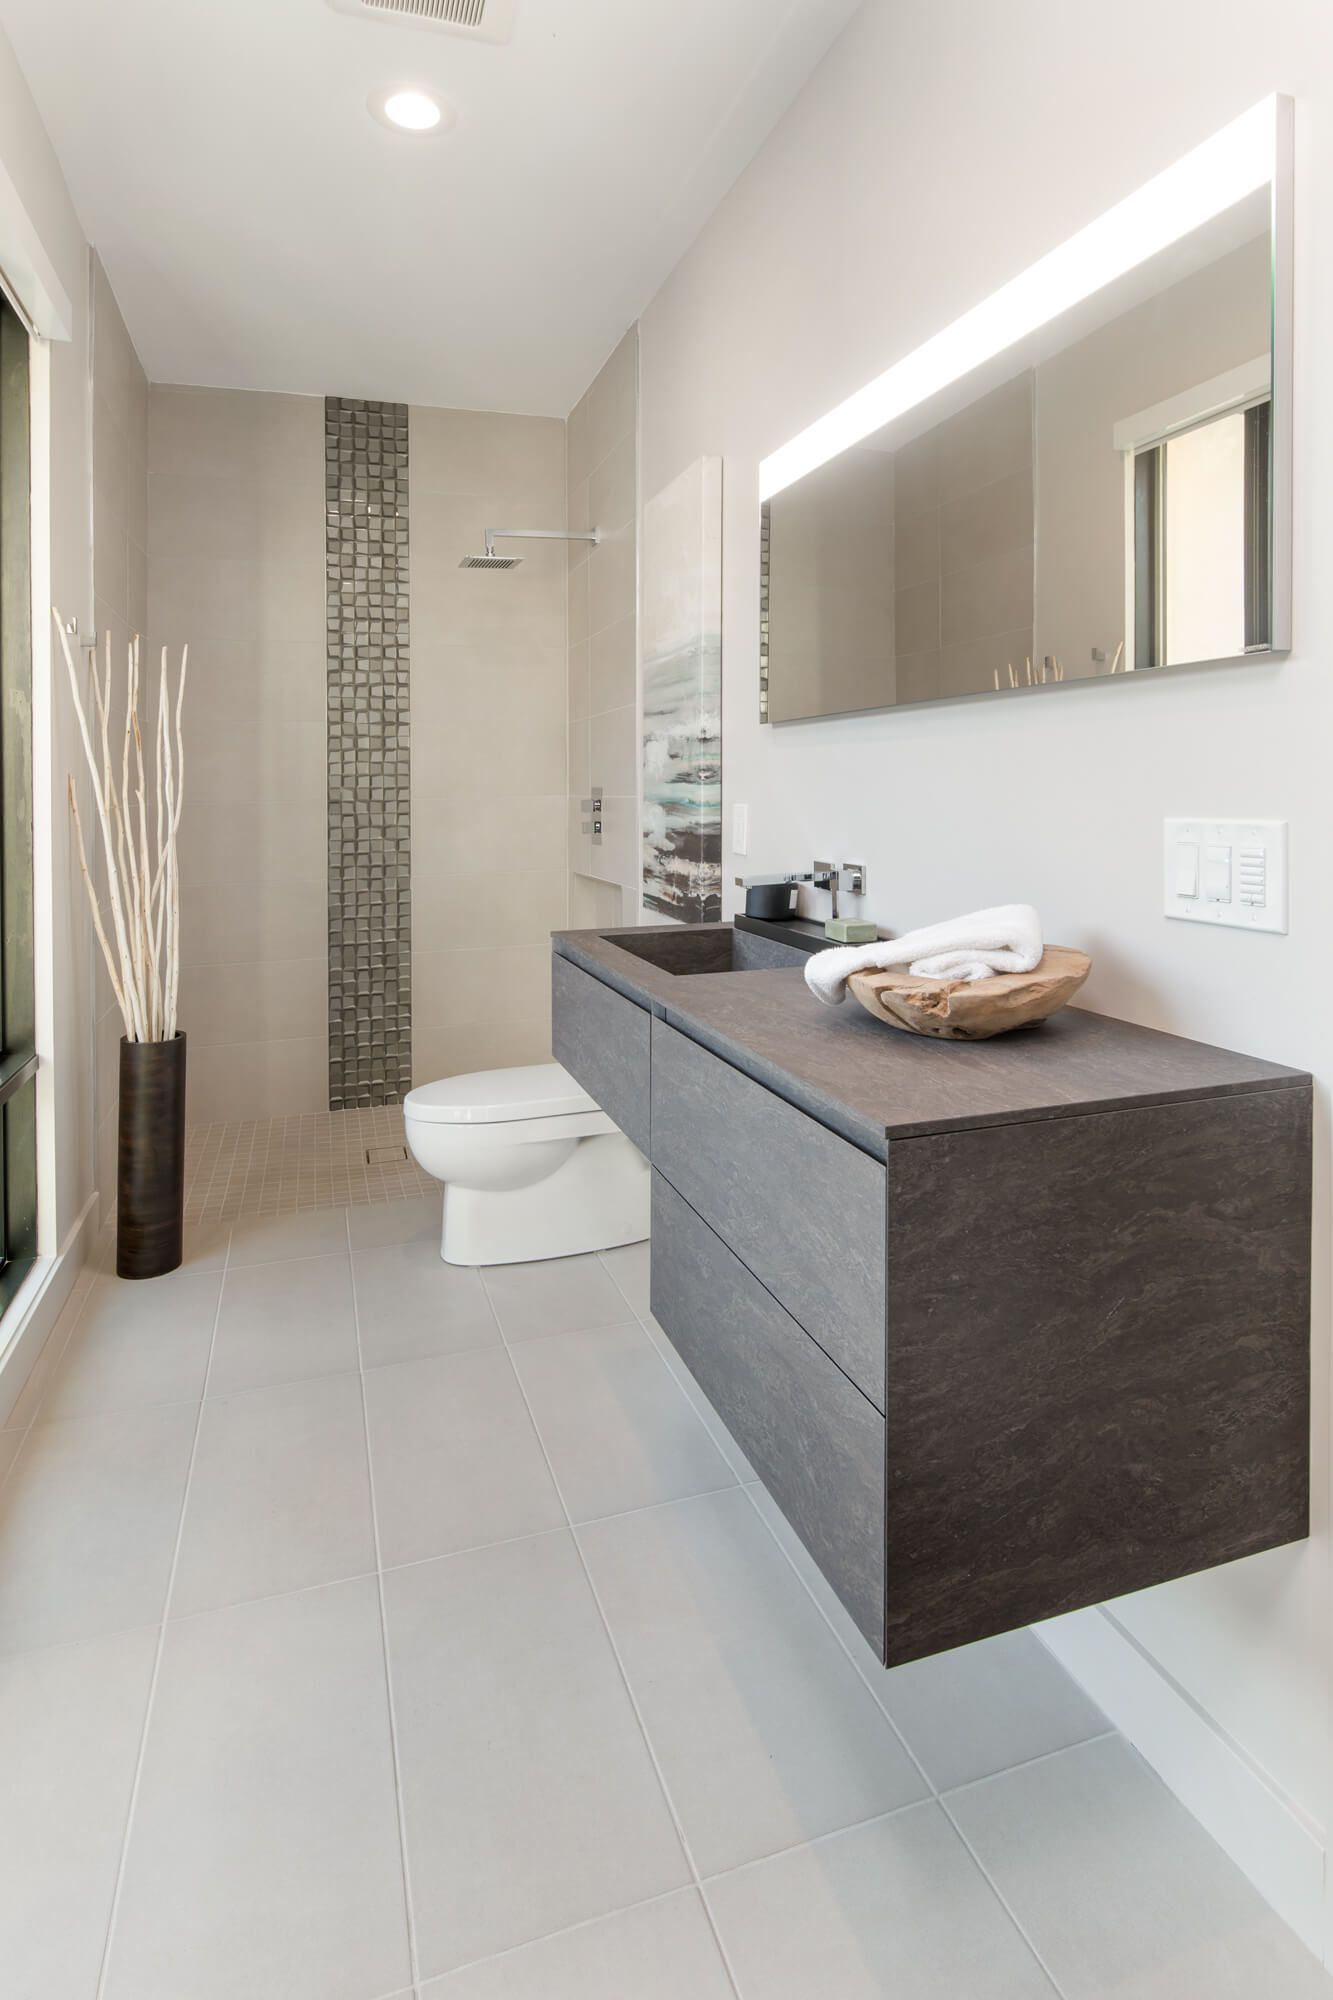 Custom contemporary bathroom designed by Interior Designer, RM Interiors of Cincinnati Ohio.